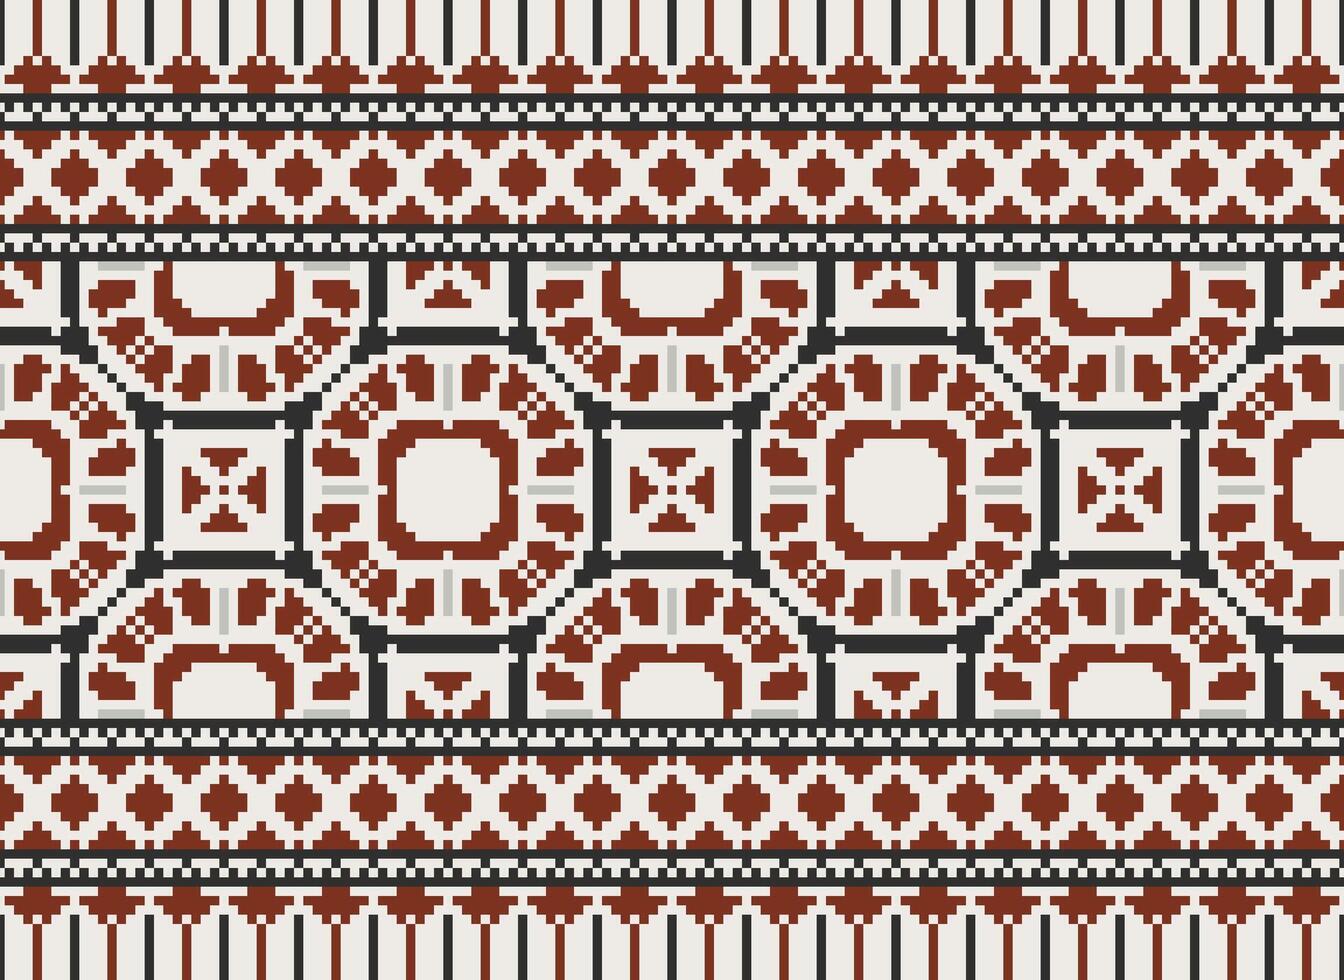 africain traverser point broderie sur arrière-plan.géométrique ethnique Oriental sans couture modèle traditionnel.aztèque style abstrait vecteur illustration.design pour texture, tissu, vêtements, emballage, tapis.